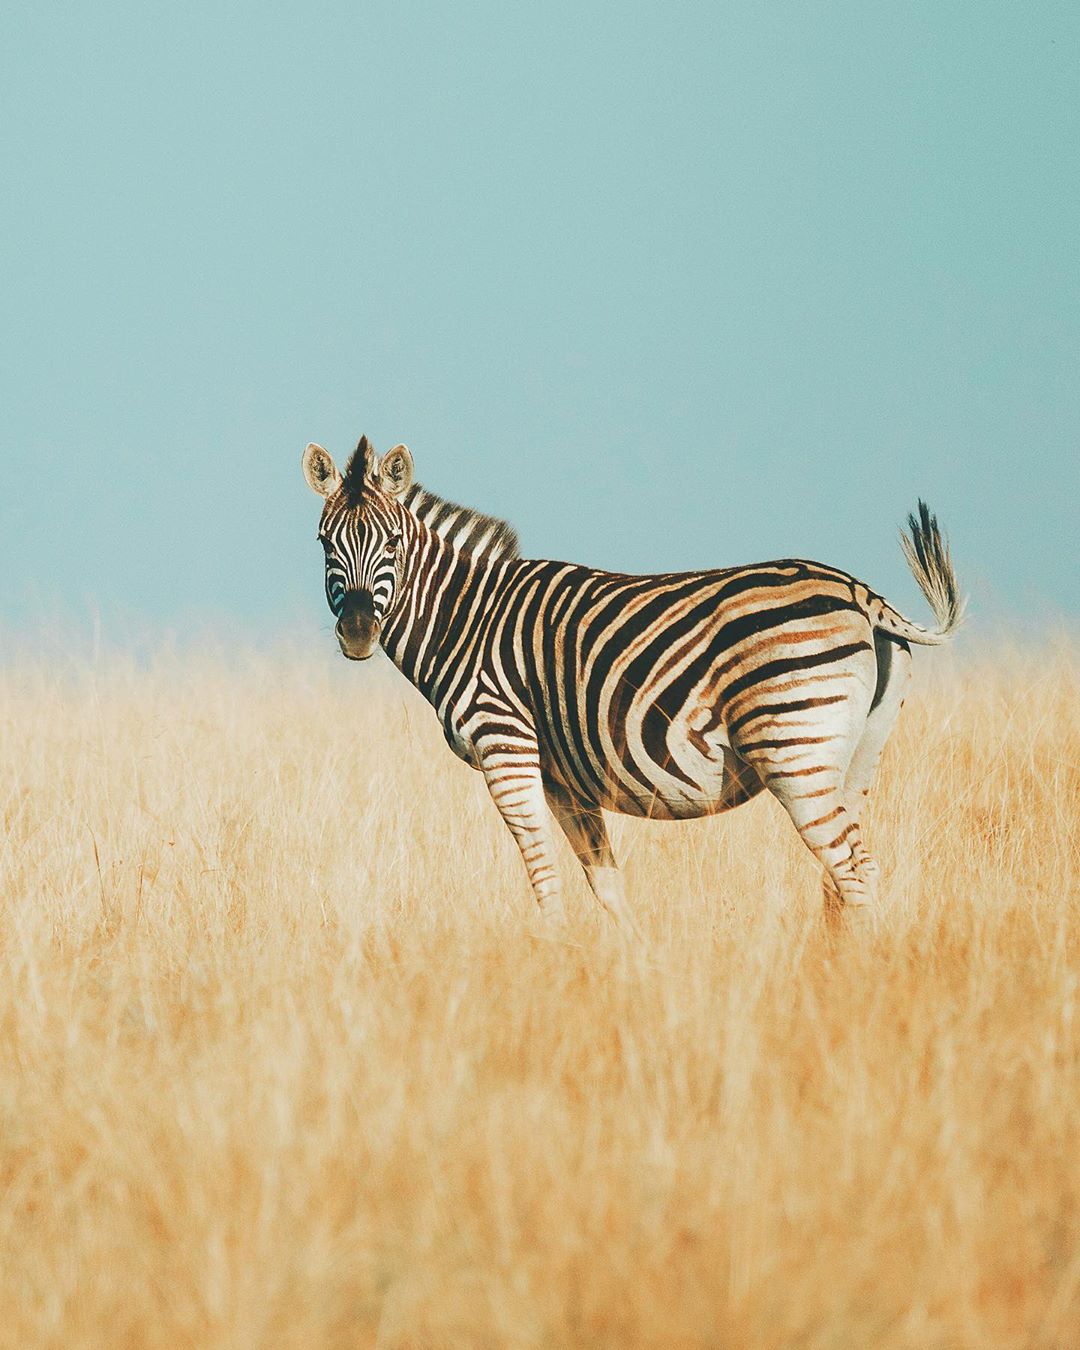 Фотографии дикой природы и животных от Шарли Савели